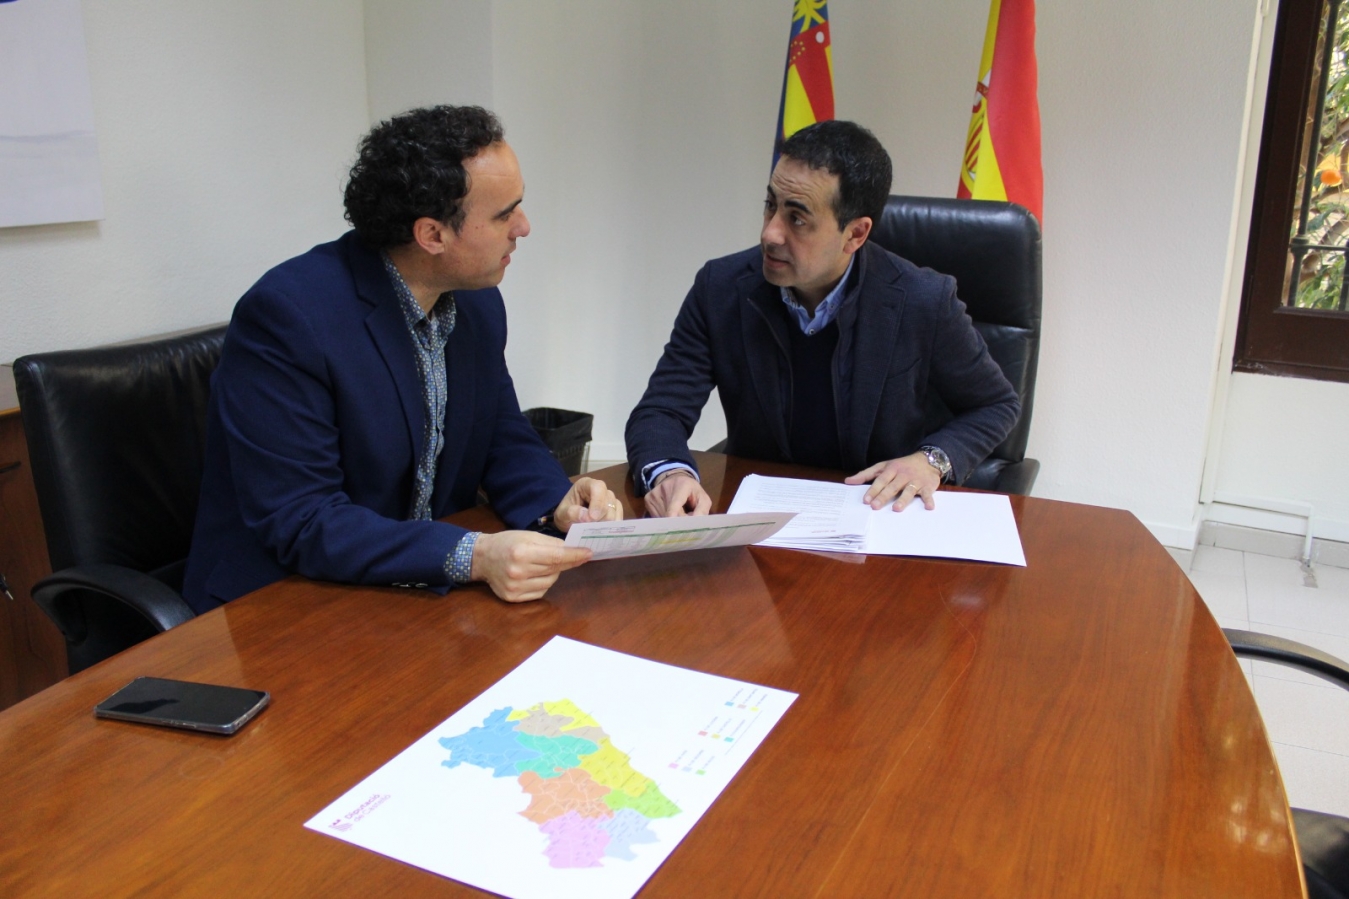 La Diputación de Castellón adjudica el contrato para que los municipios adheridos a la Central de Compras ahorren en su factura eléctrica